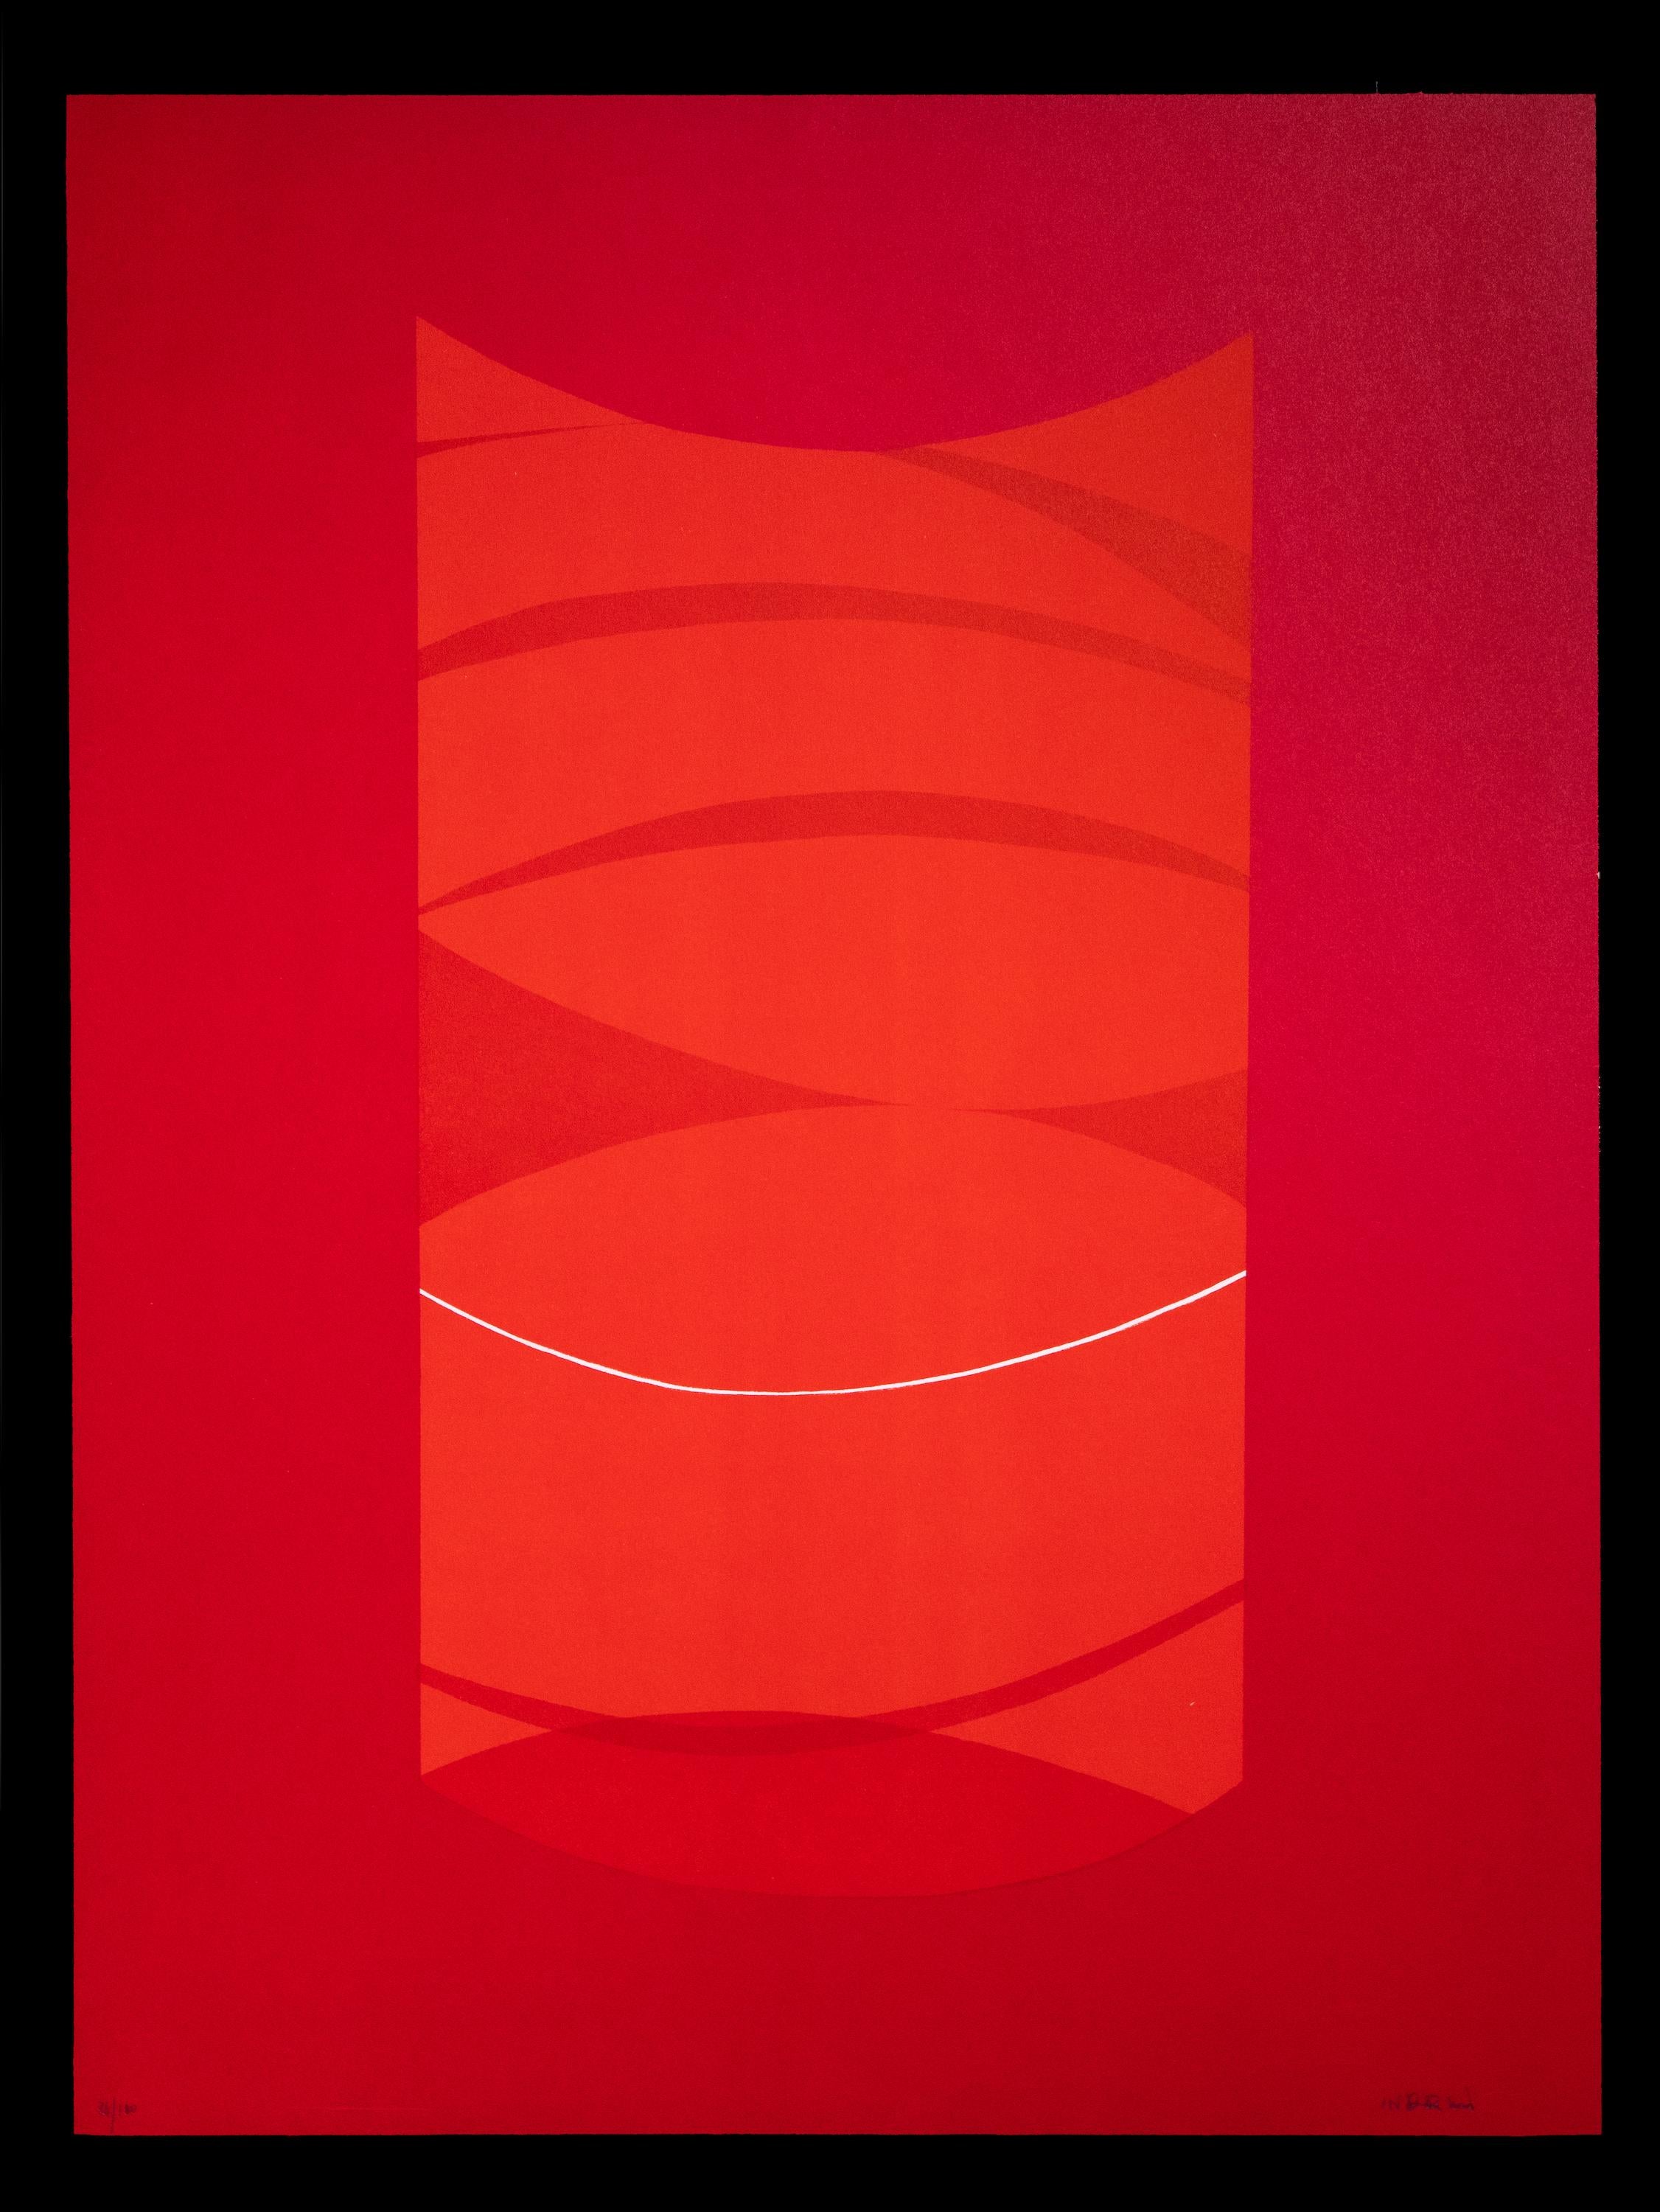 Lithographie rouge chaud Red One réalisée par Lorenzo Indrimi dans les années 1970.

Il s'agit d'une édition de 100 tirages, plus quelques épreuves d'artiste et 30 pièces en numéros romains.